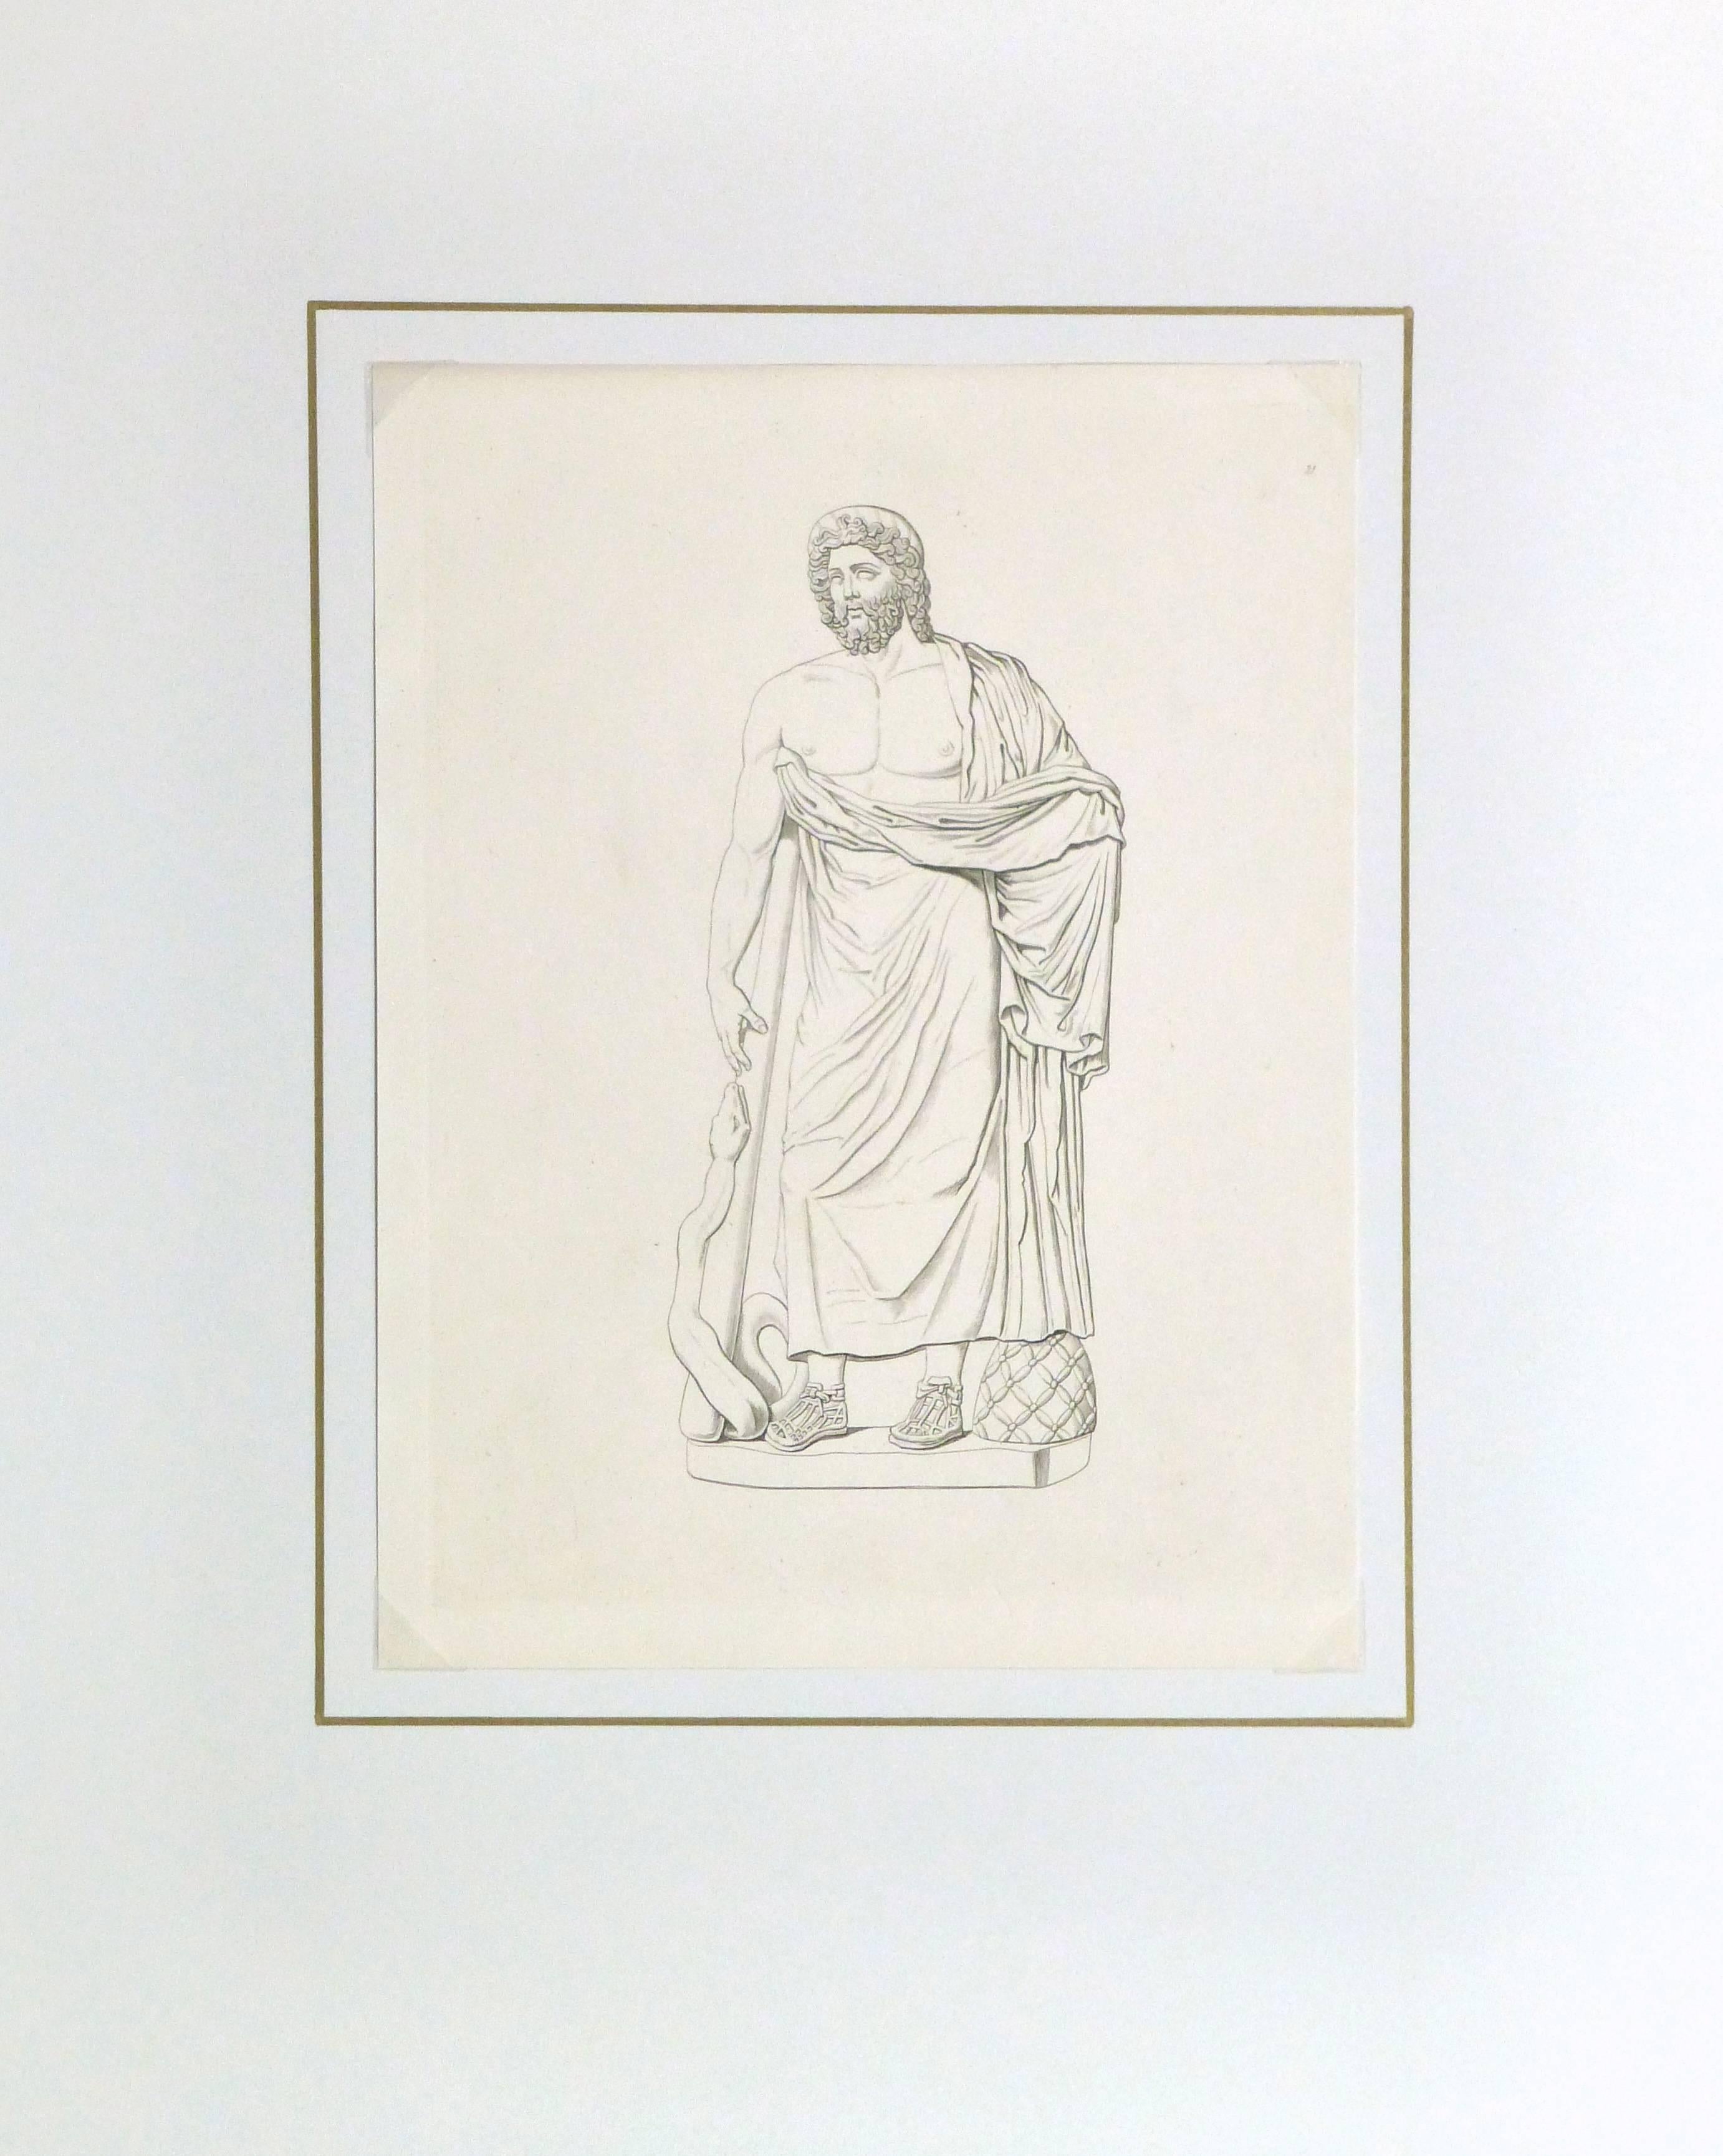 Feiner antiker Kupferstich einer männlichen Statue im römischen Stil, die sich mit ausgestrecktem Arm einer Schlange entgegenstreckt, um 1850.

Originalkunstwerk auf Papier auf einem weißen Passepartout mit Goldrand. Inklusive Plastikhülle und